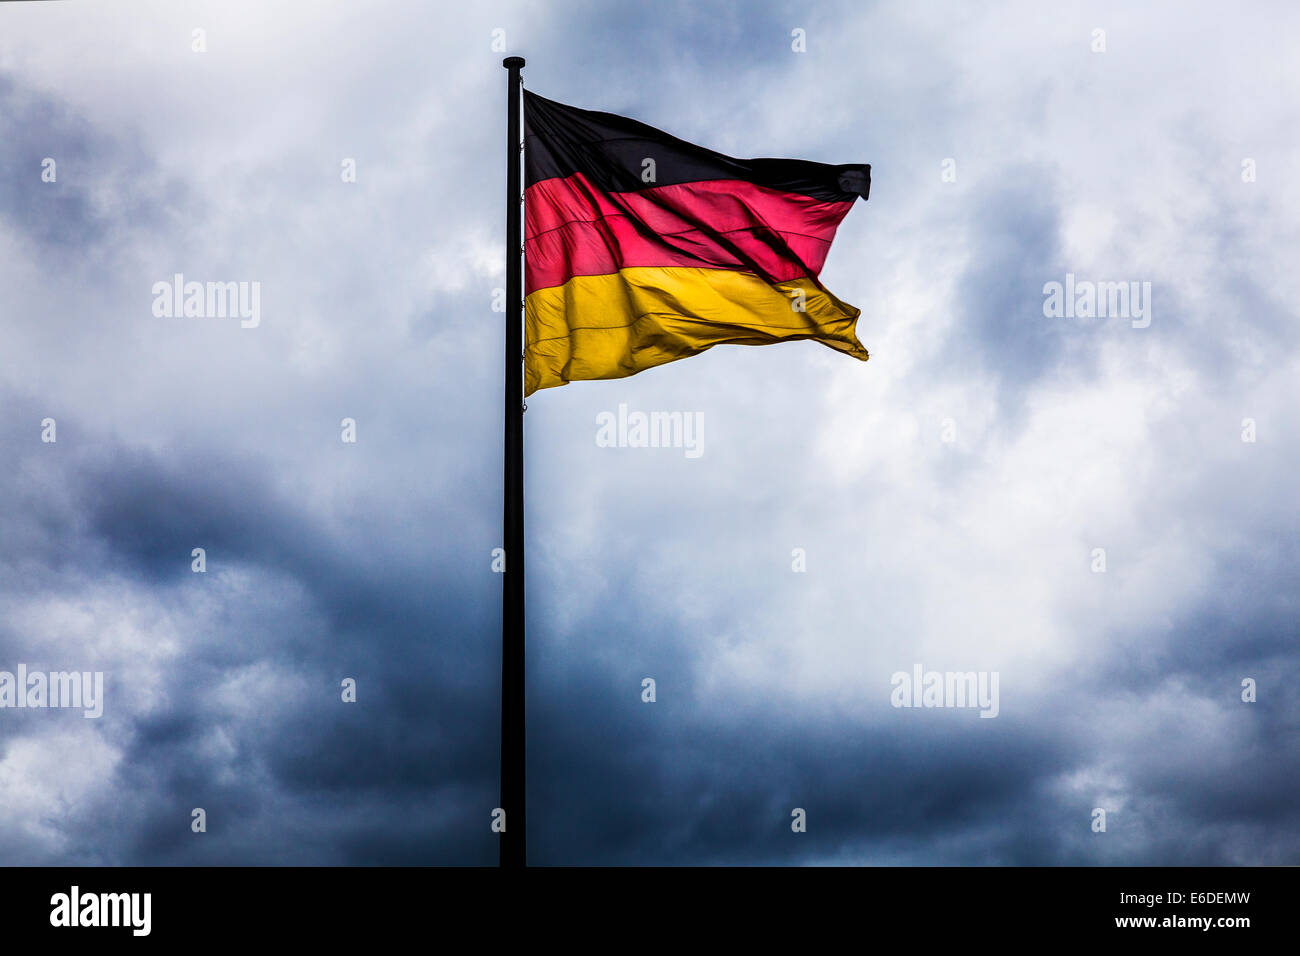 Storm clouds gathering derrière le drapeau allemand, symbole de la crise politique, de la guerre ou de troubles civils. Banque D'Images